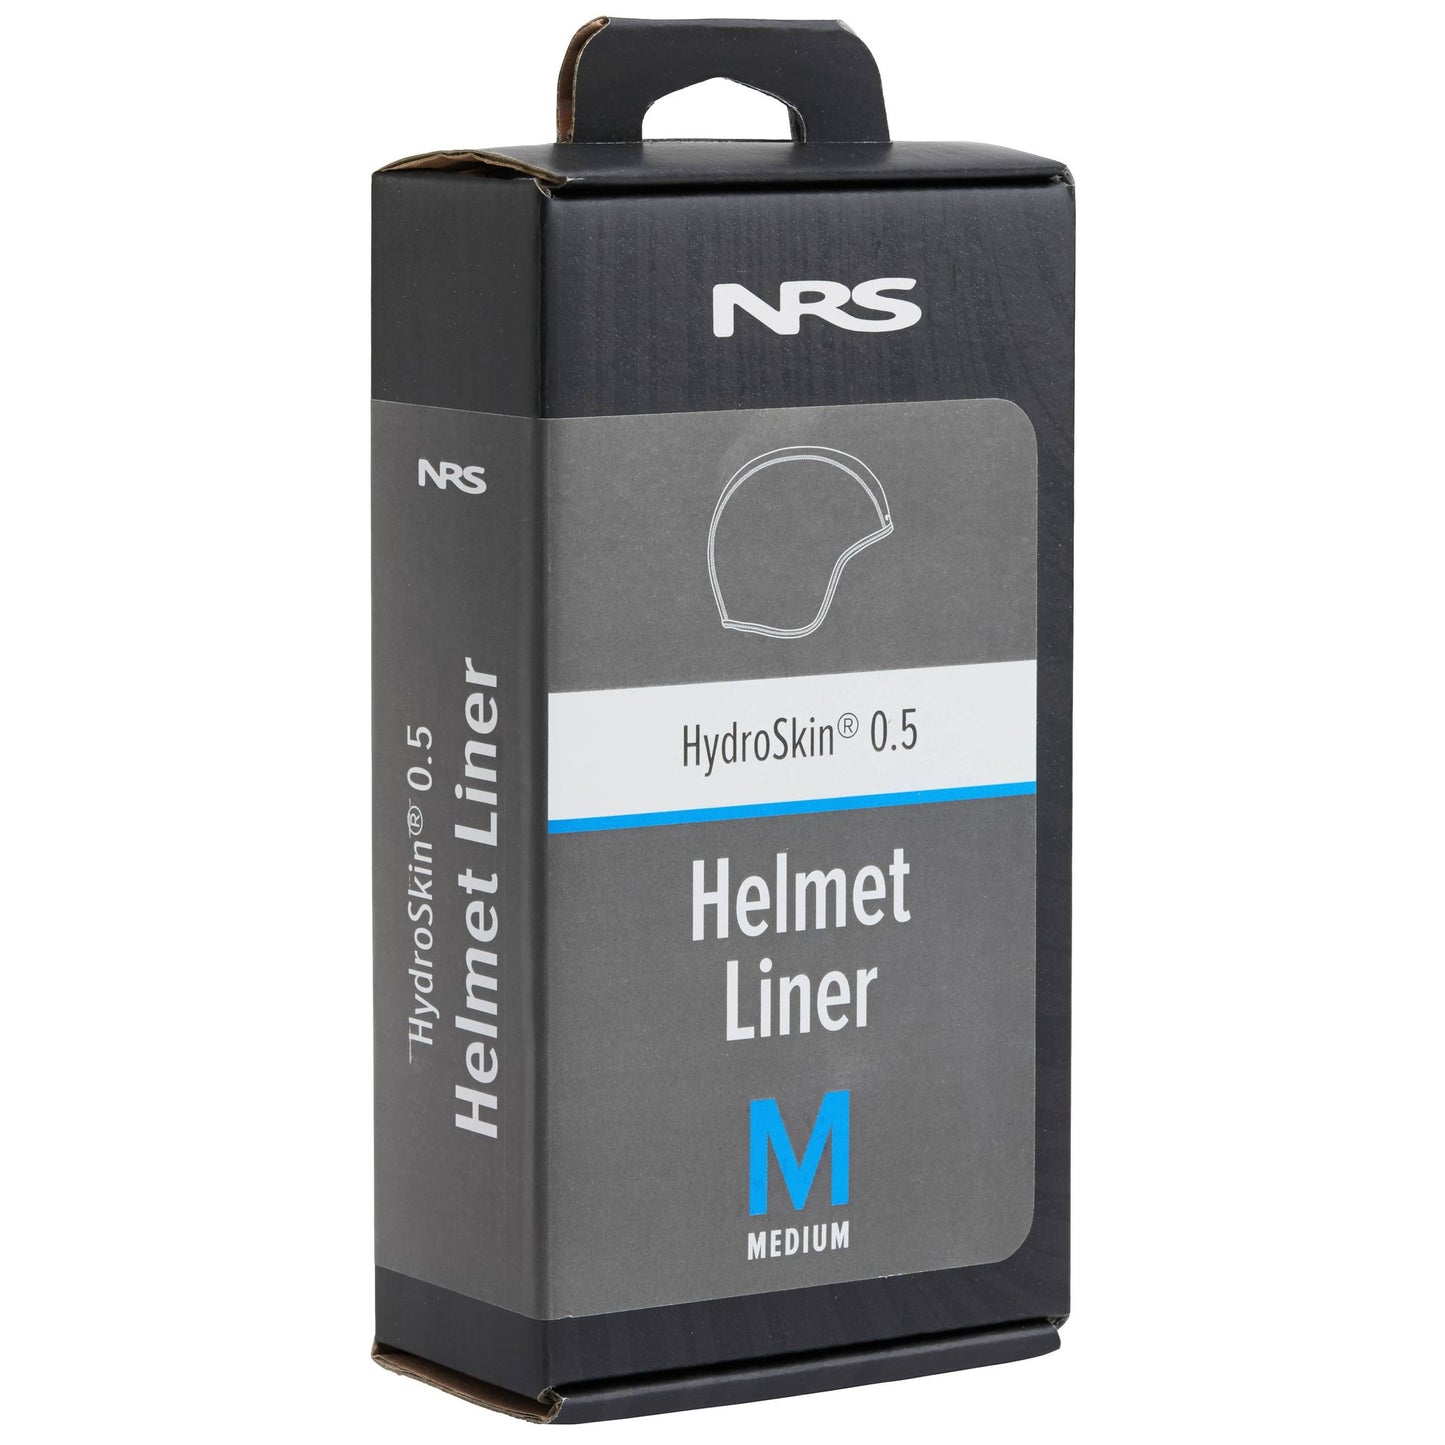 HydroSkin 0.5 Helmet Liner